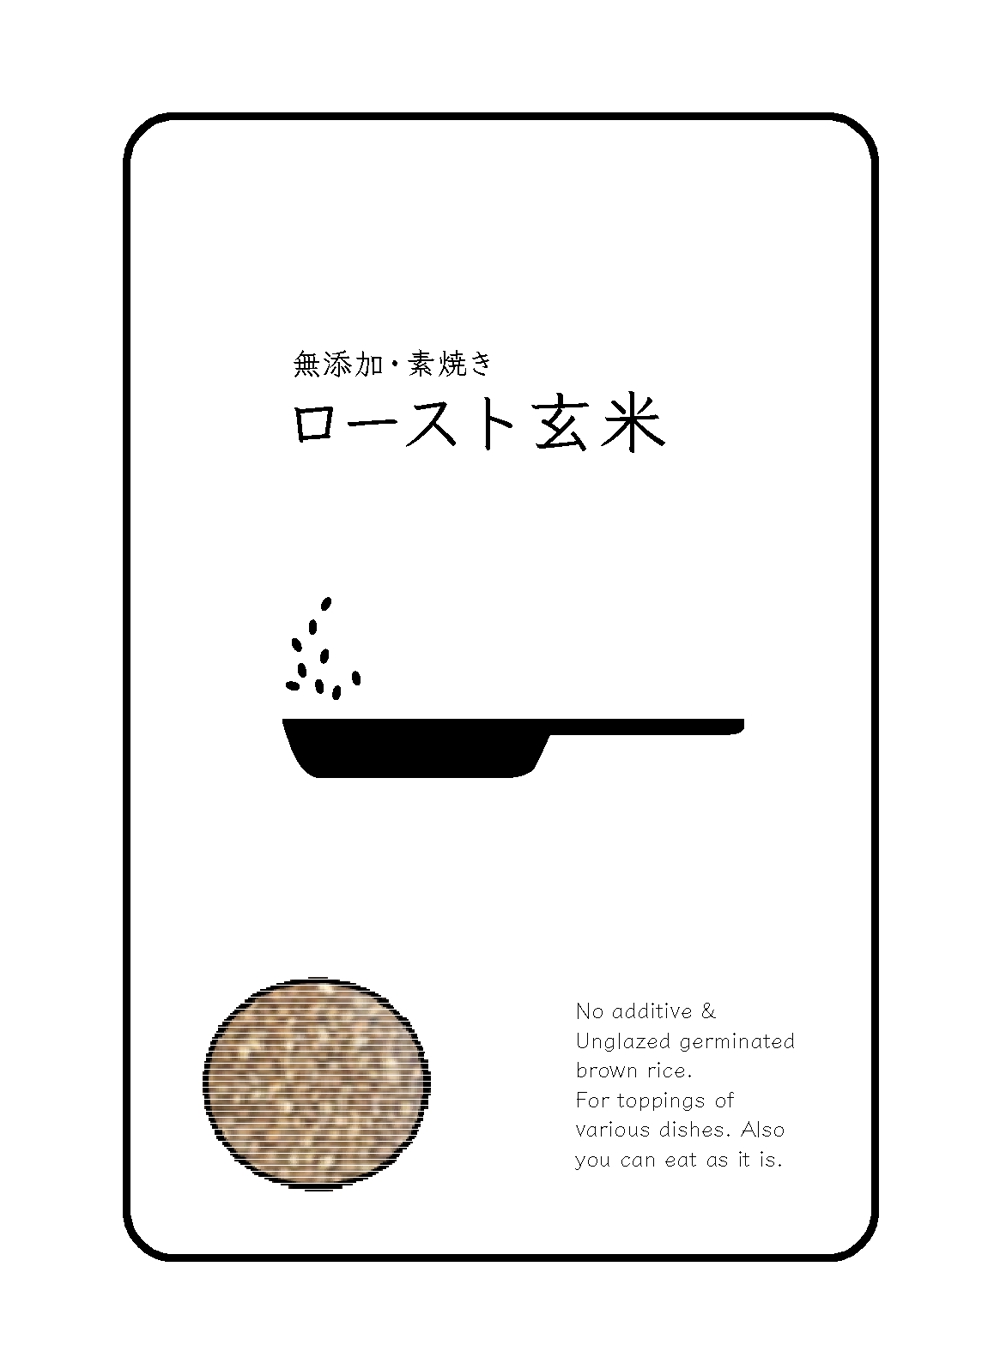 『発芽焼き玄米』のパッケージデザイン募集